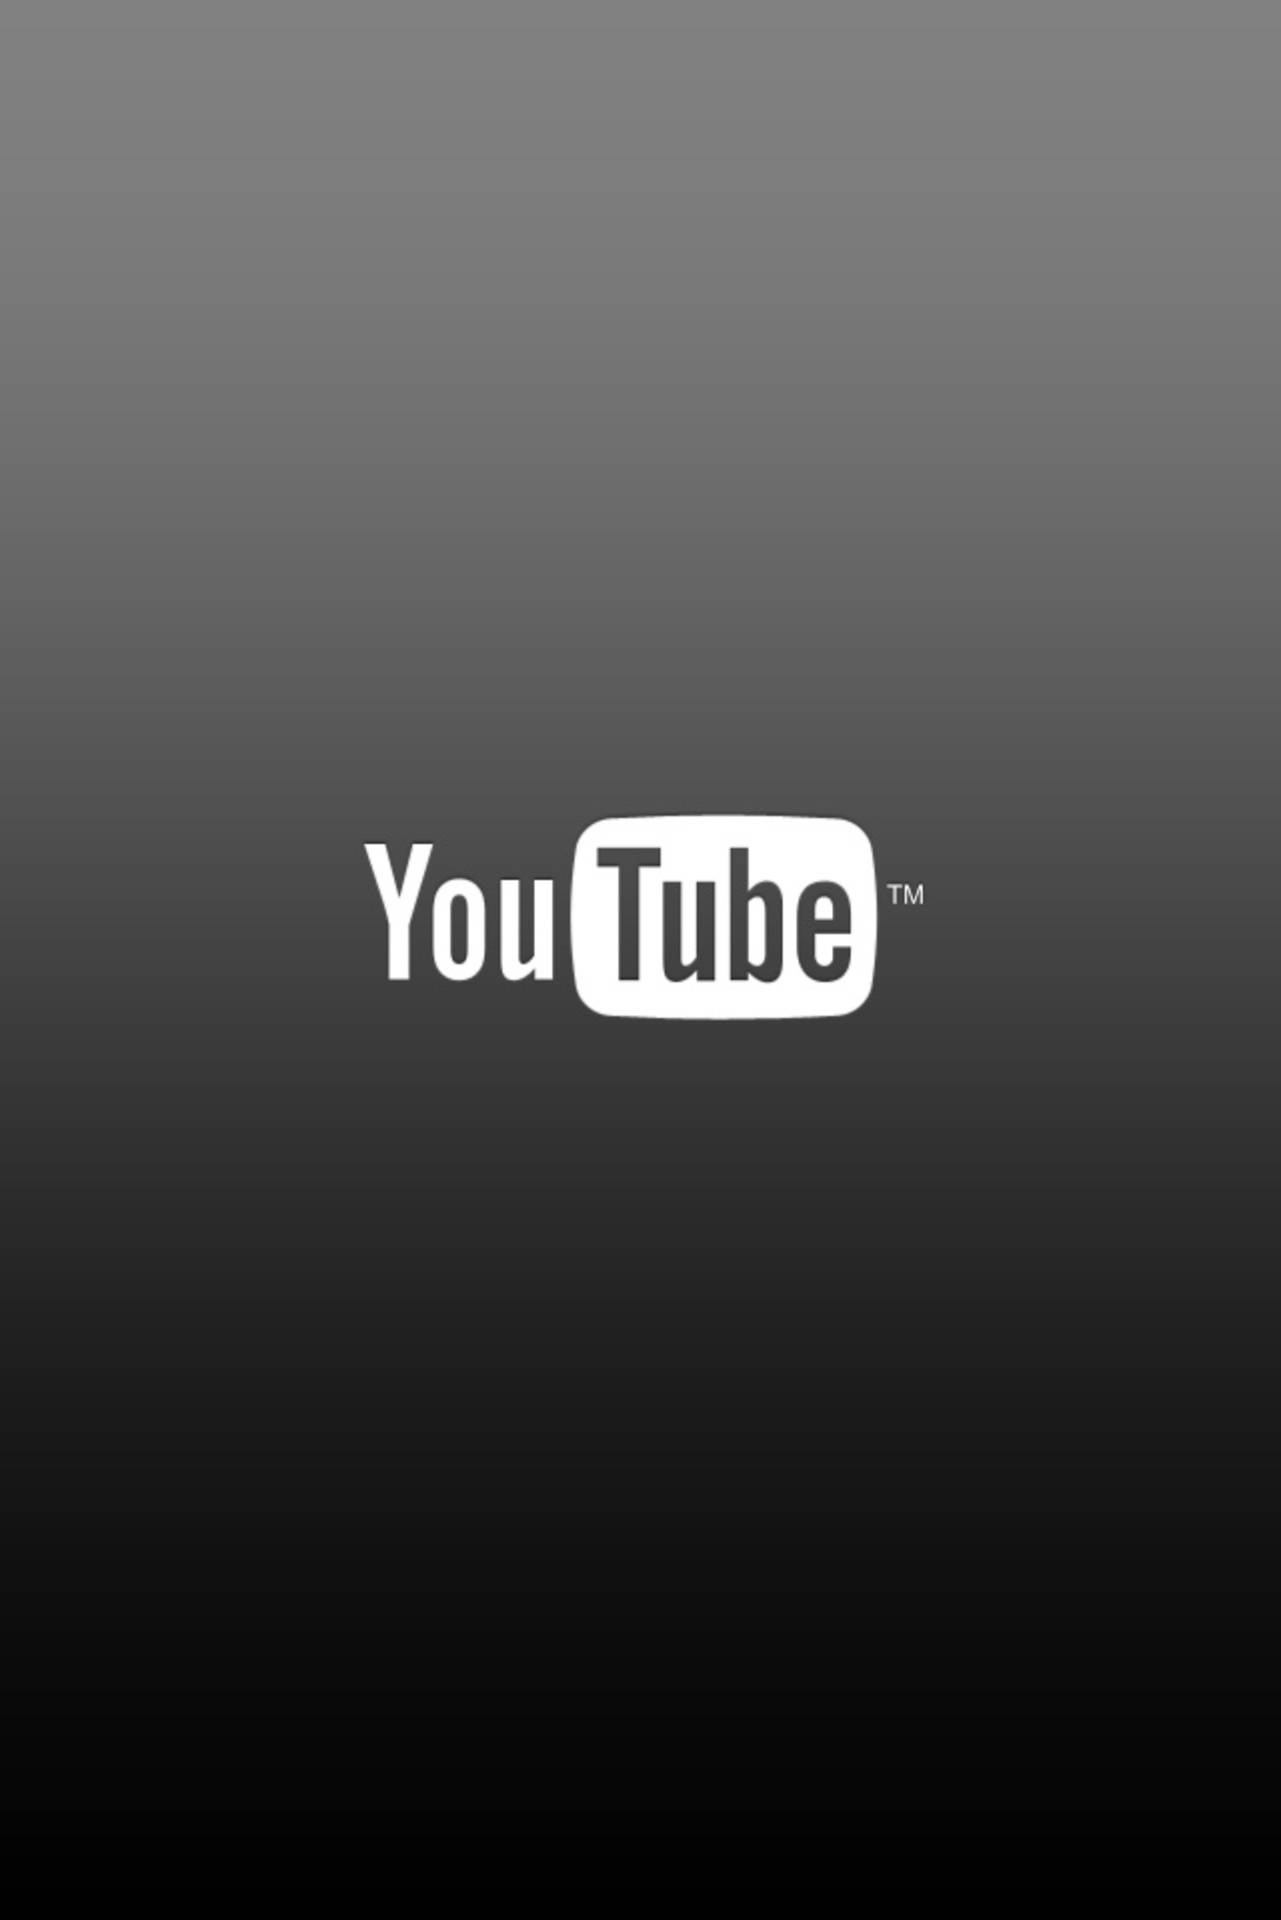 Ordinary Youtube Logo